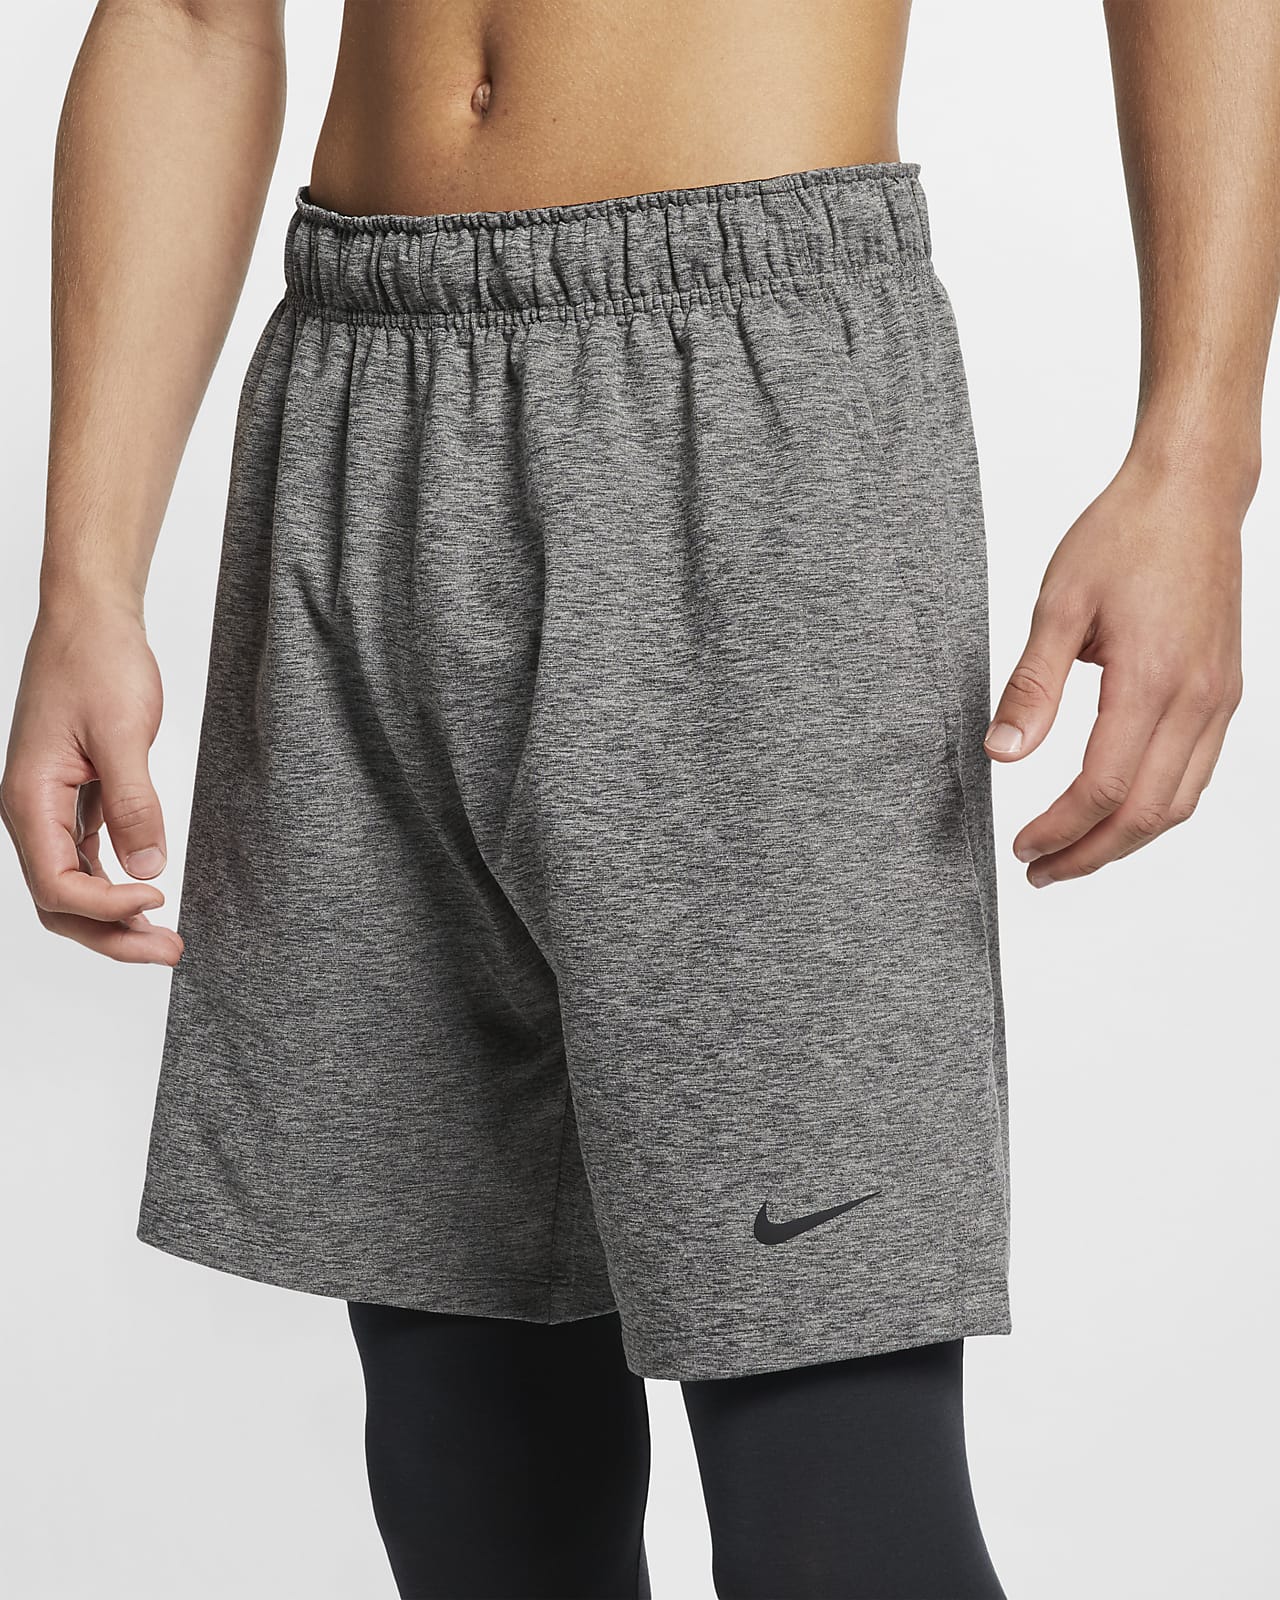 Nike Dri-FIT Men's Yoga Training Shorts. Nike SA